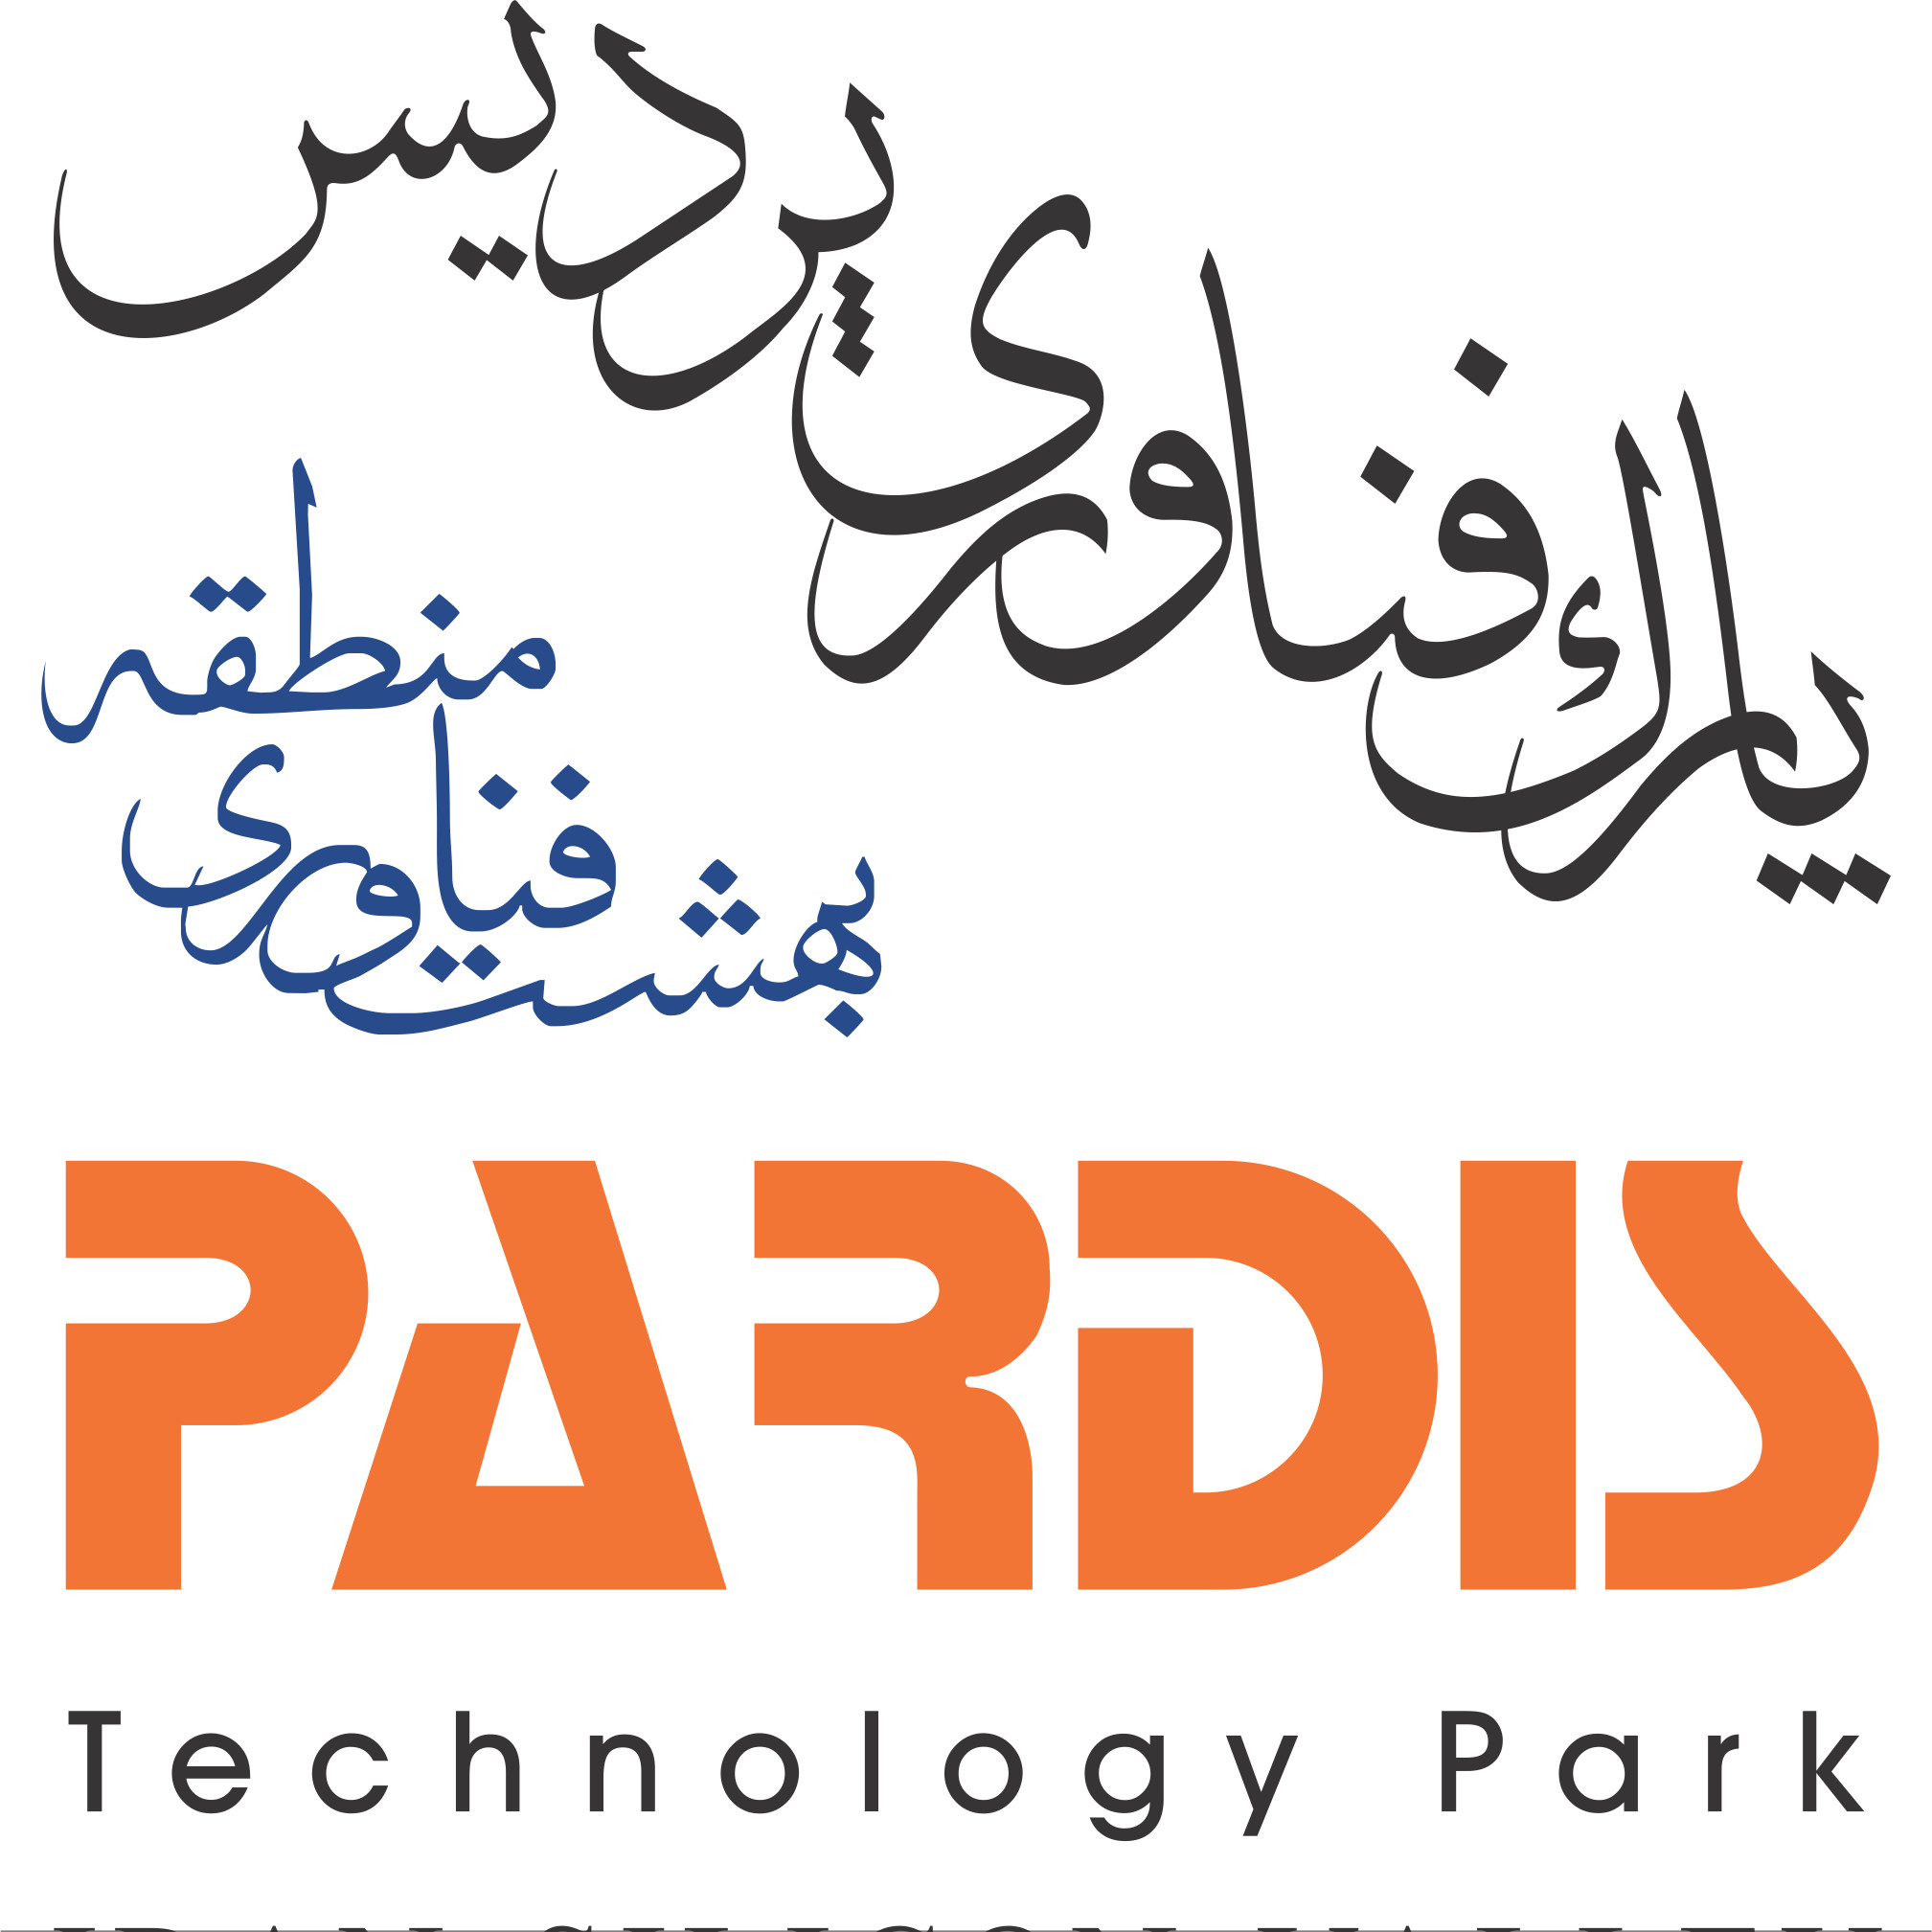 پارک فناوری پردیس